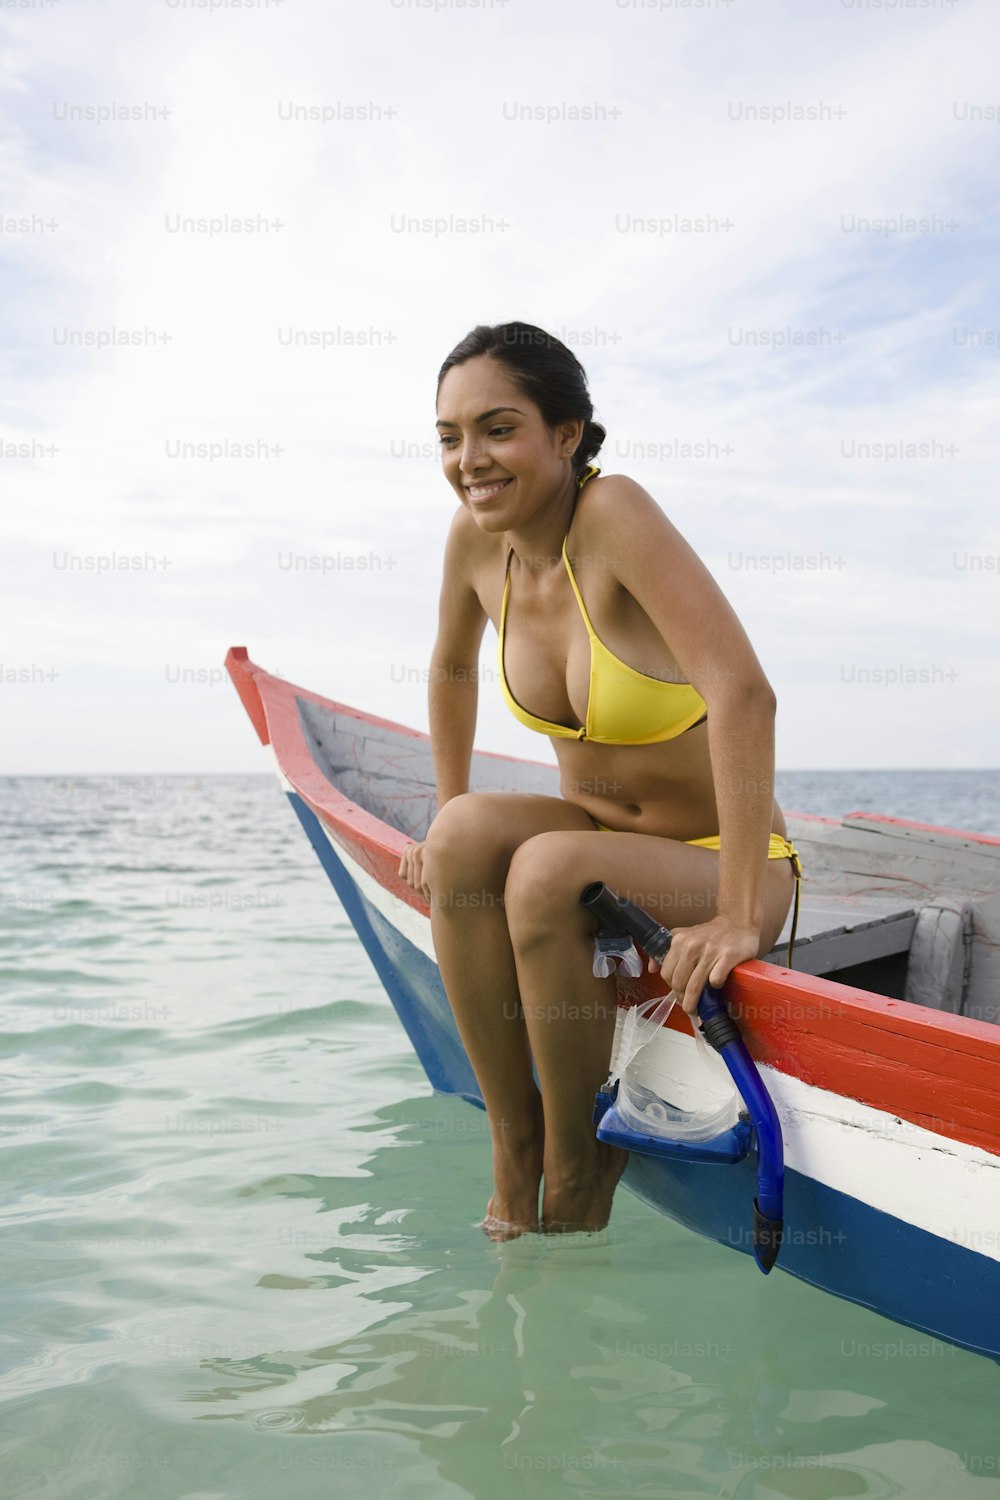 a woman in a yellow bikini sitting on a boat